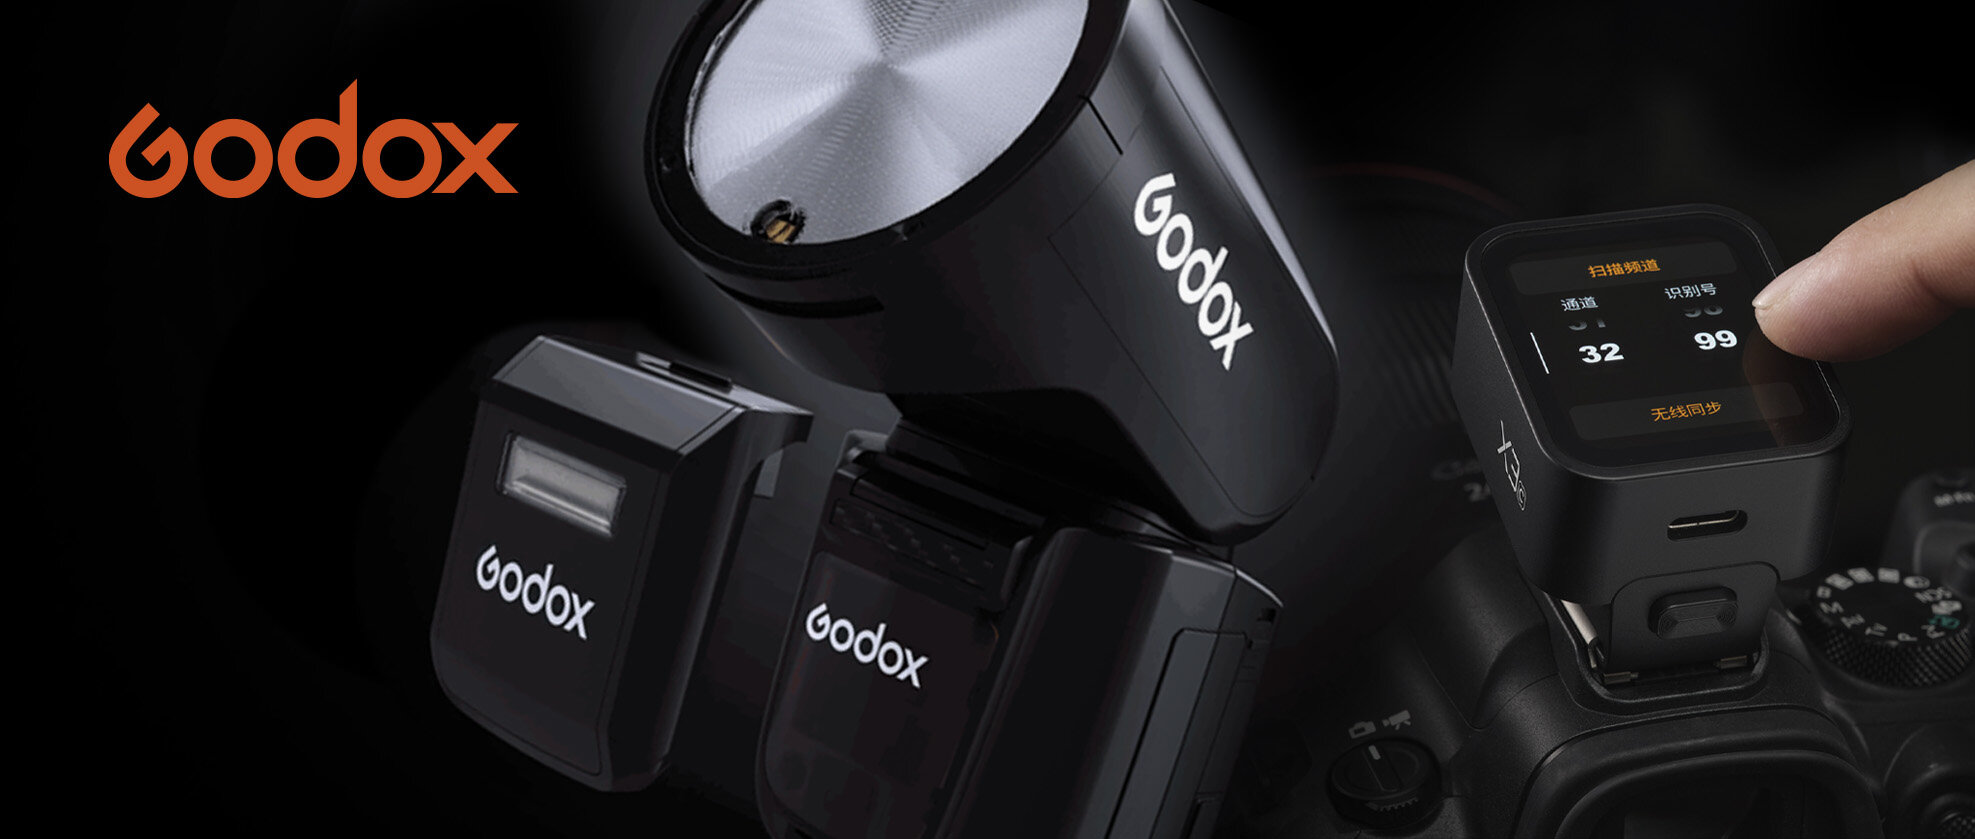 ゴドックス(GODOX) | KPI - (株)ケンコープロフェショナルイメージング